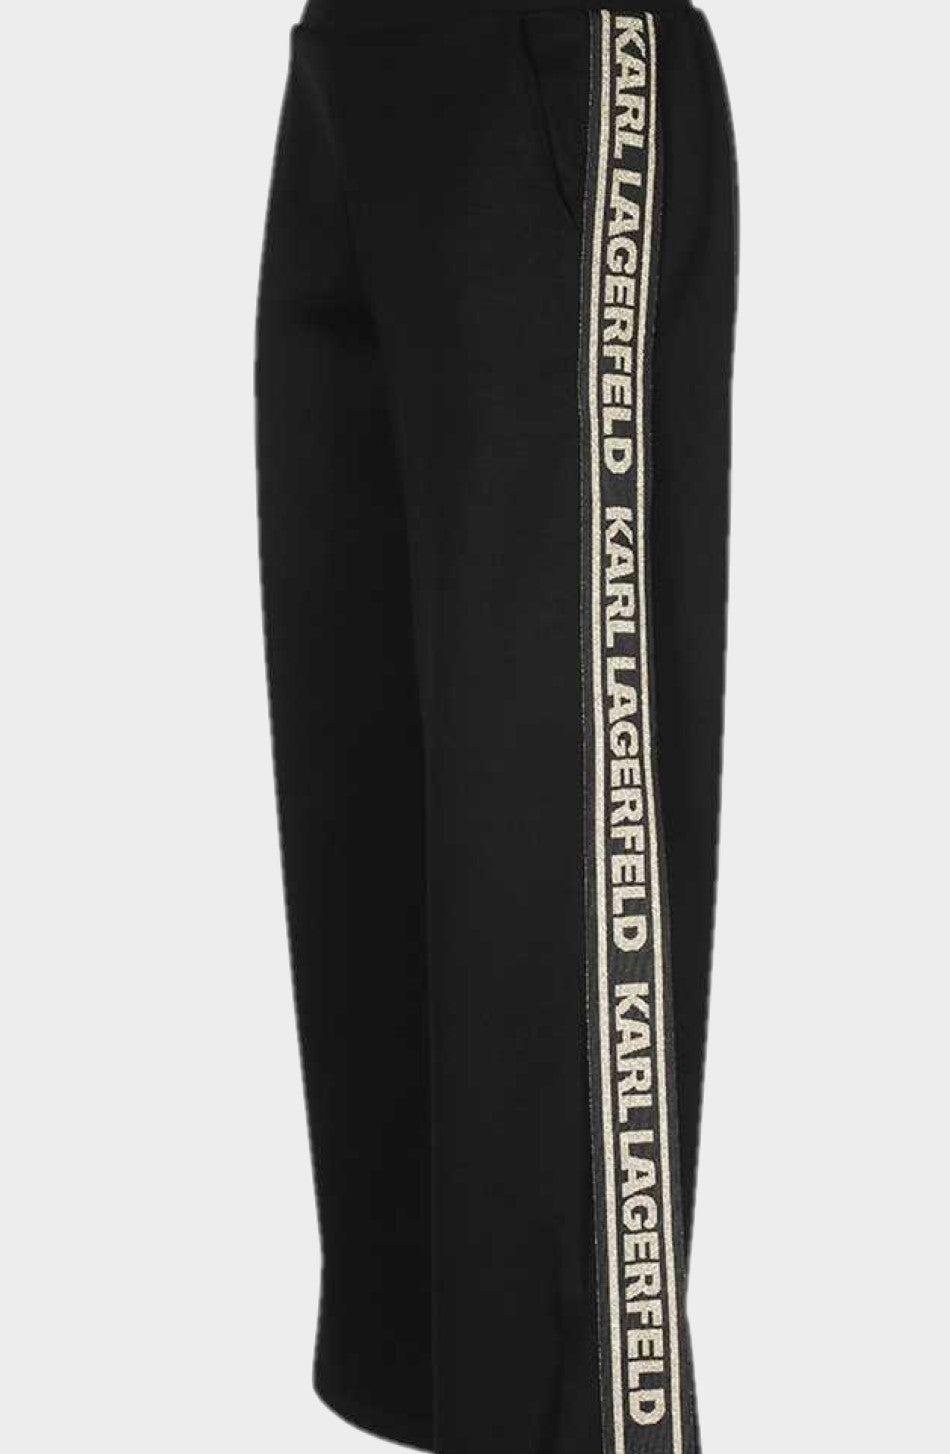 מכנסי ג'רזי עבים לנשים לוגו זהב KARL LAGERFELD Vendome online | ונדום .